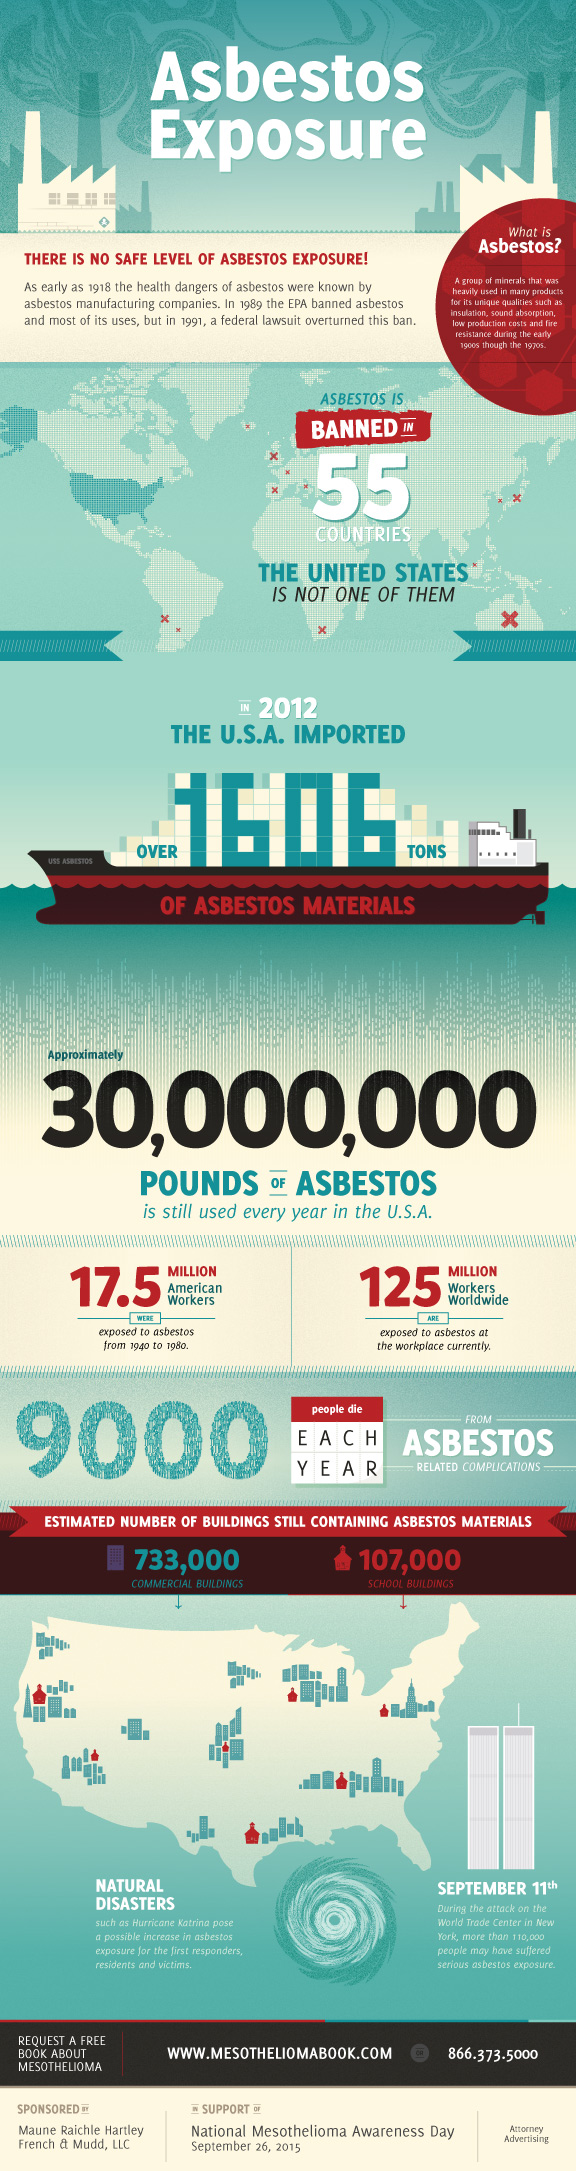 mesothelioma infographic asbestos exposure